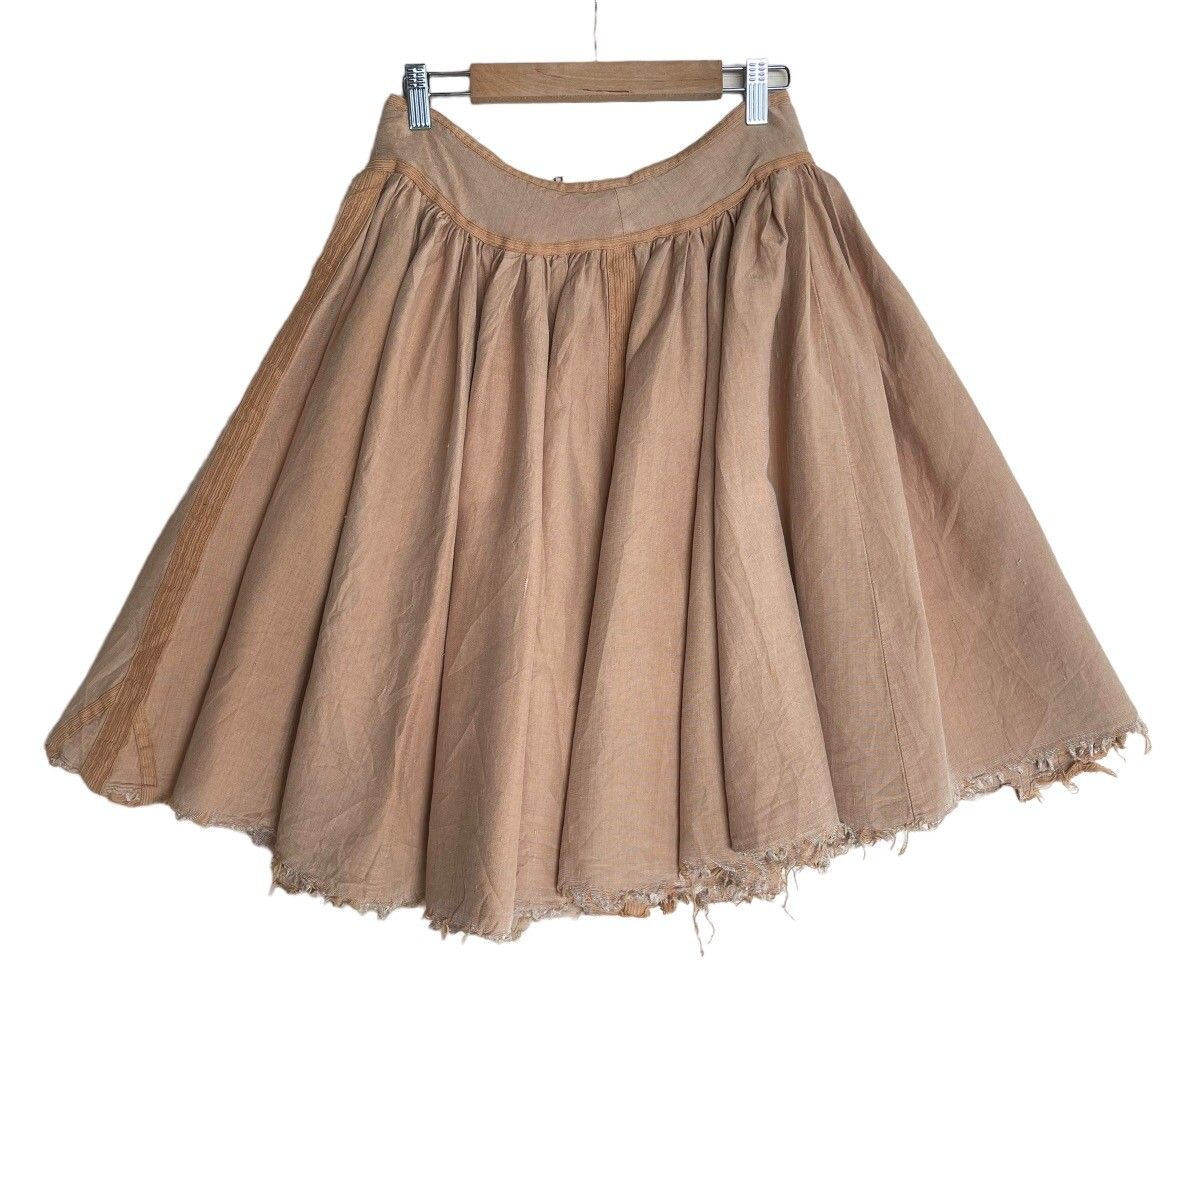 ⚡️QUICK SALE⚡️Dries Van Noten Distressed Skirt - 8